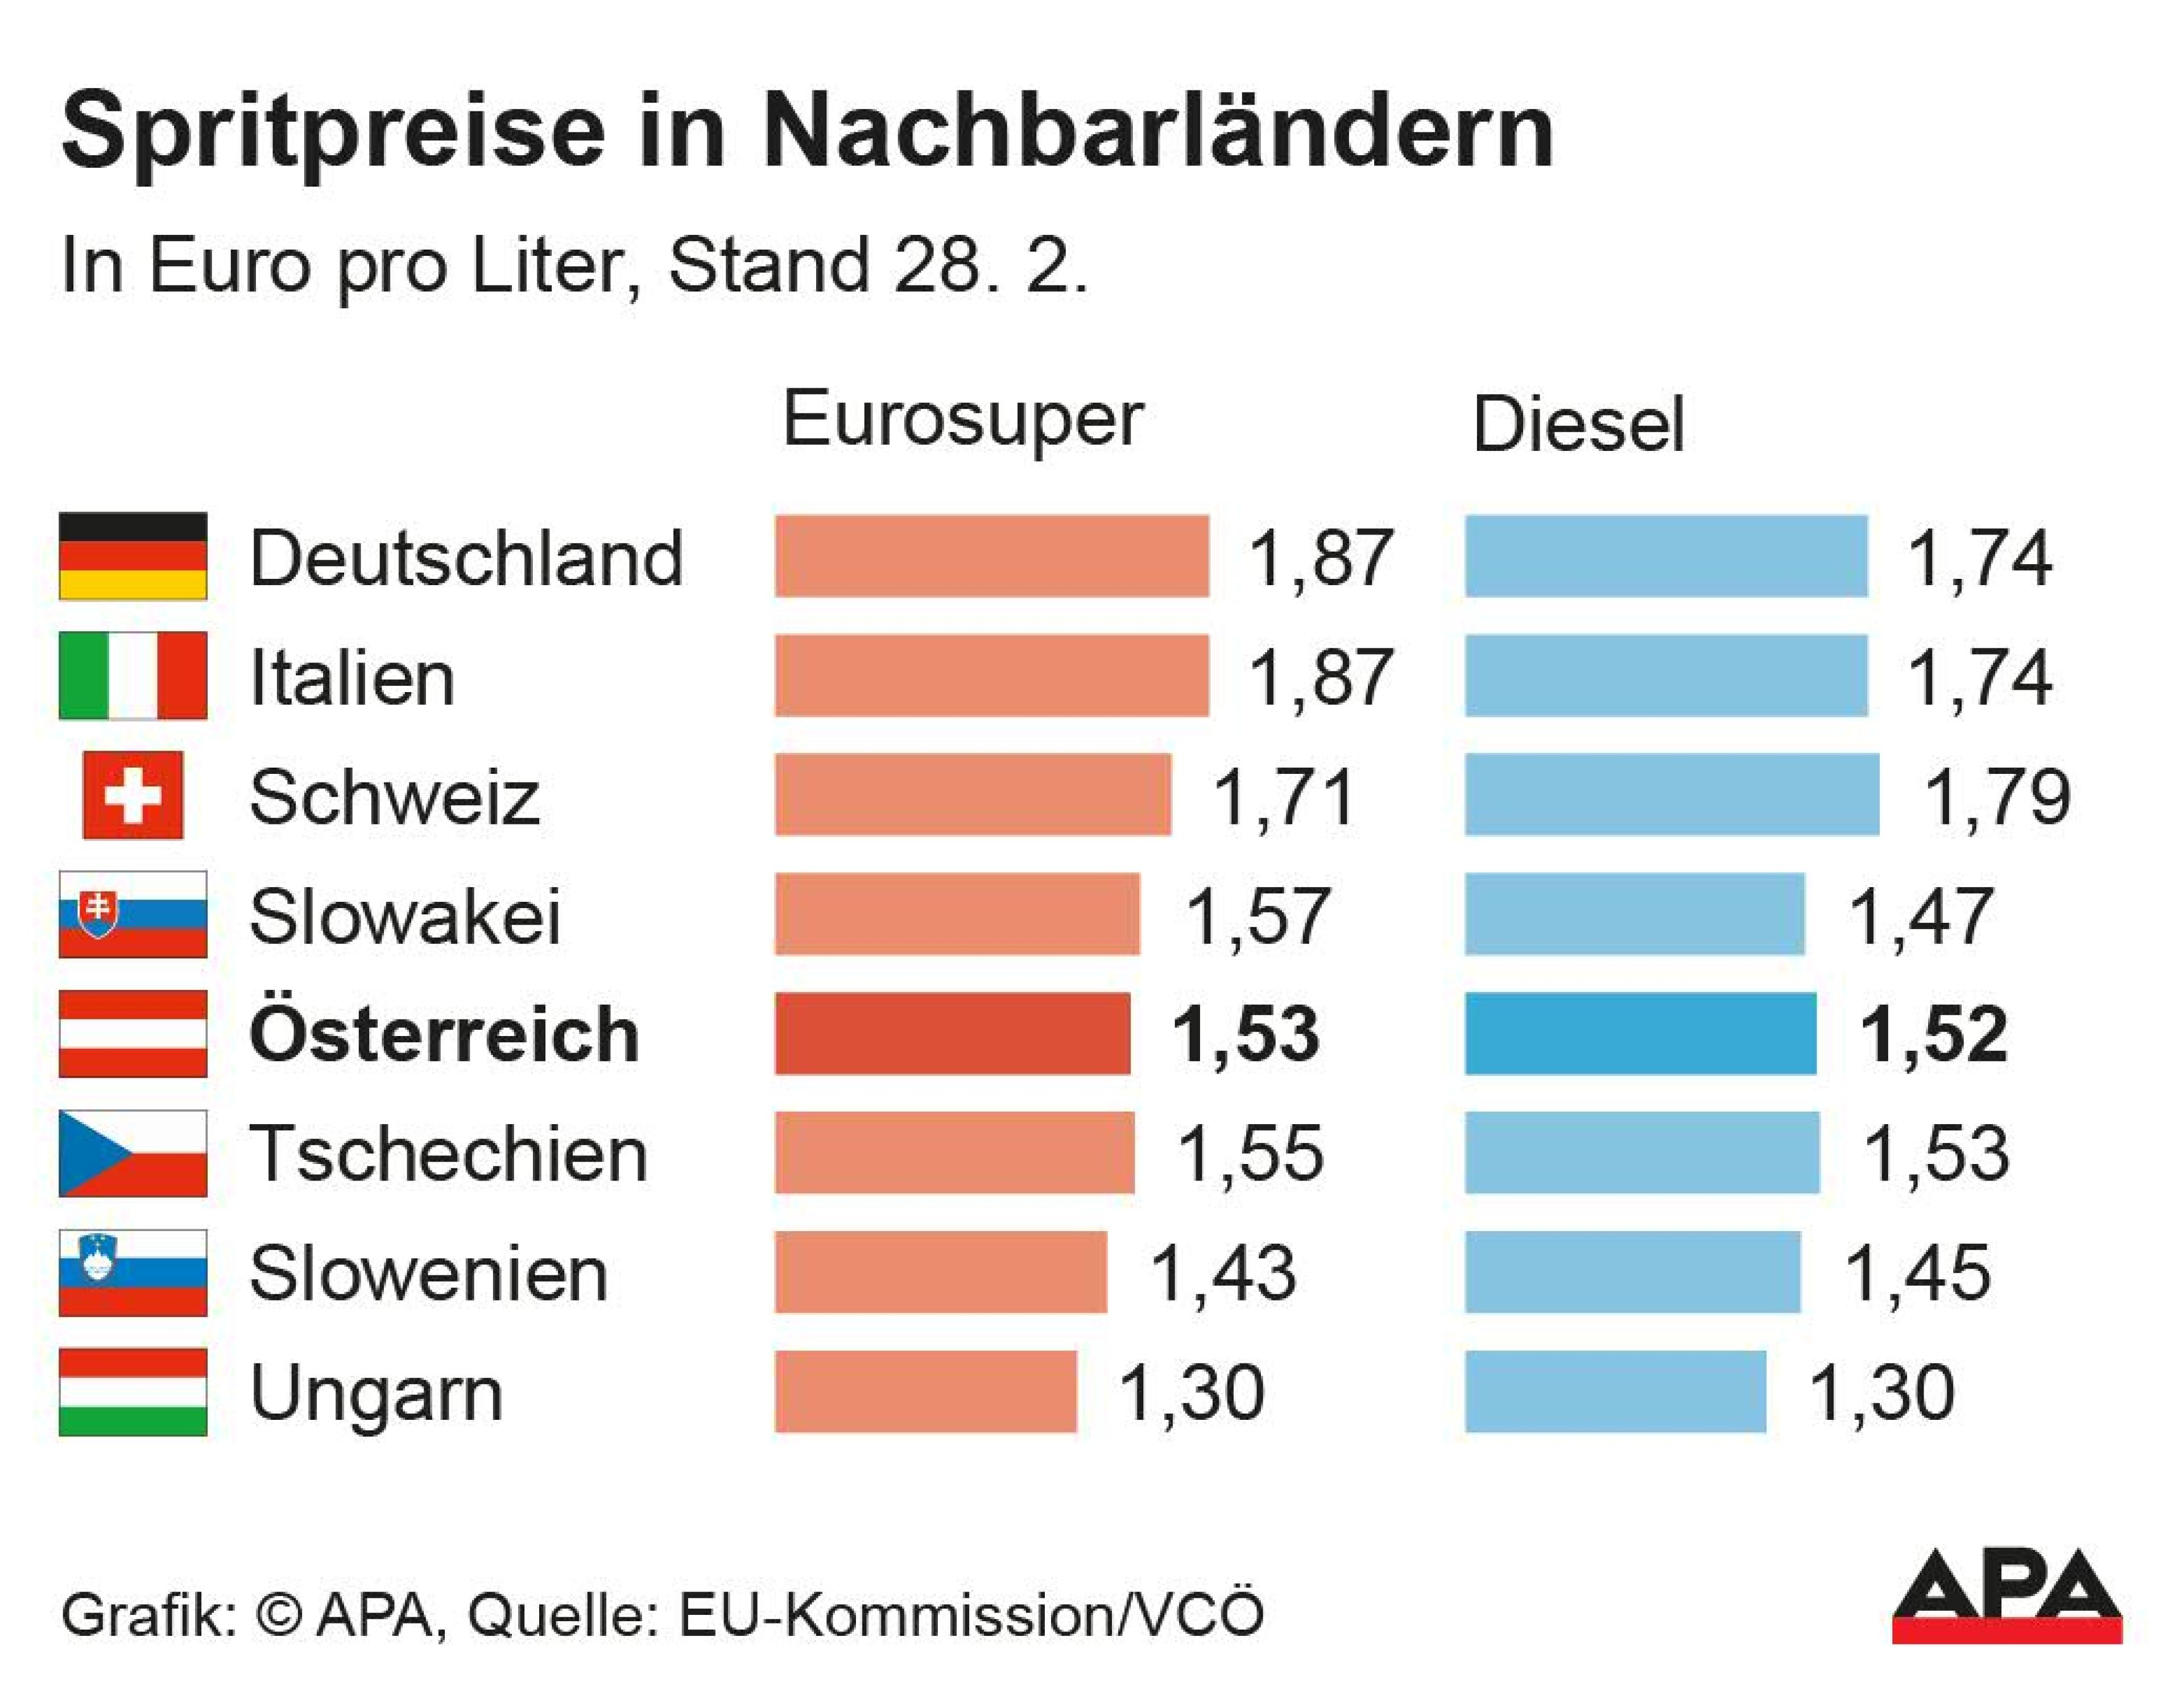 Spritpreise in Nachbarländern: Benzinpreise und Dieselpreise in Euro pro Liter